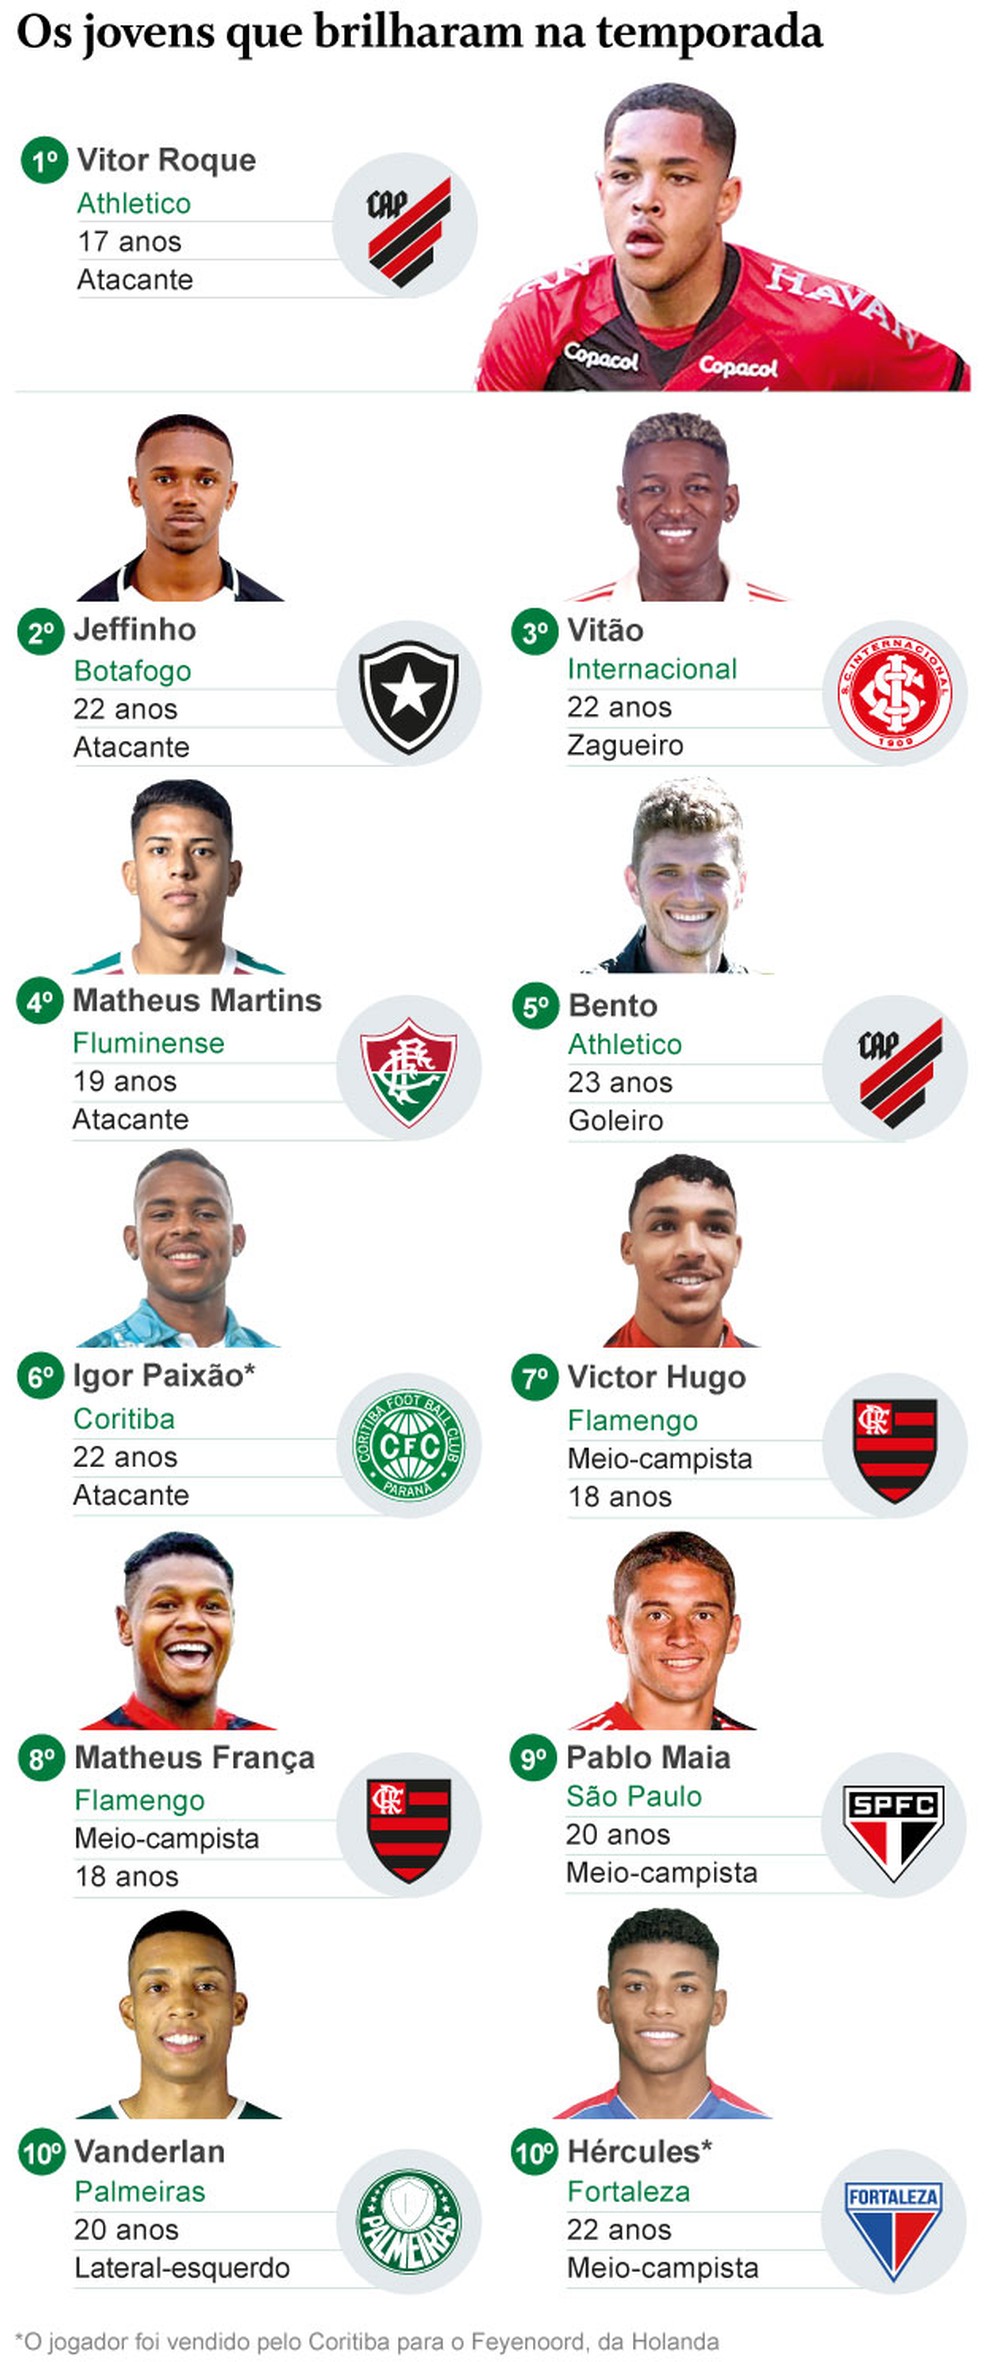 Qual será o melhor time brasileiro em 2022? Confira as previsões